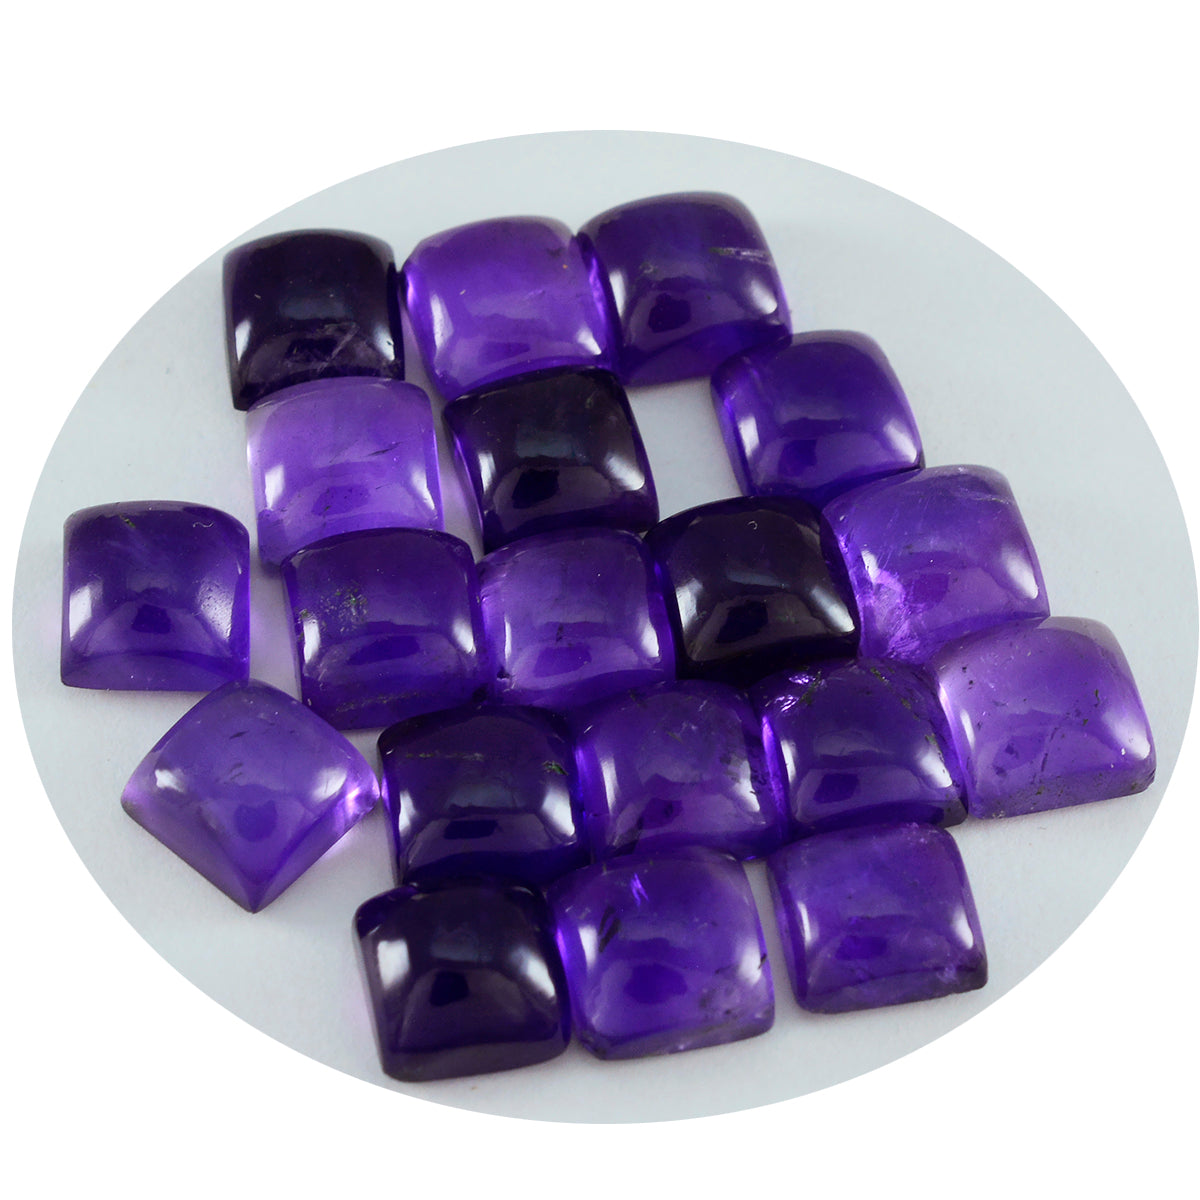 riyogems 1шт фиолетовый аметист кабошон 10x10 мм квадратной формы красивые качественные свободные драгоценные камни